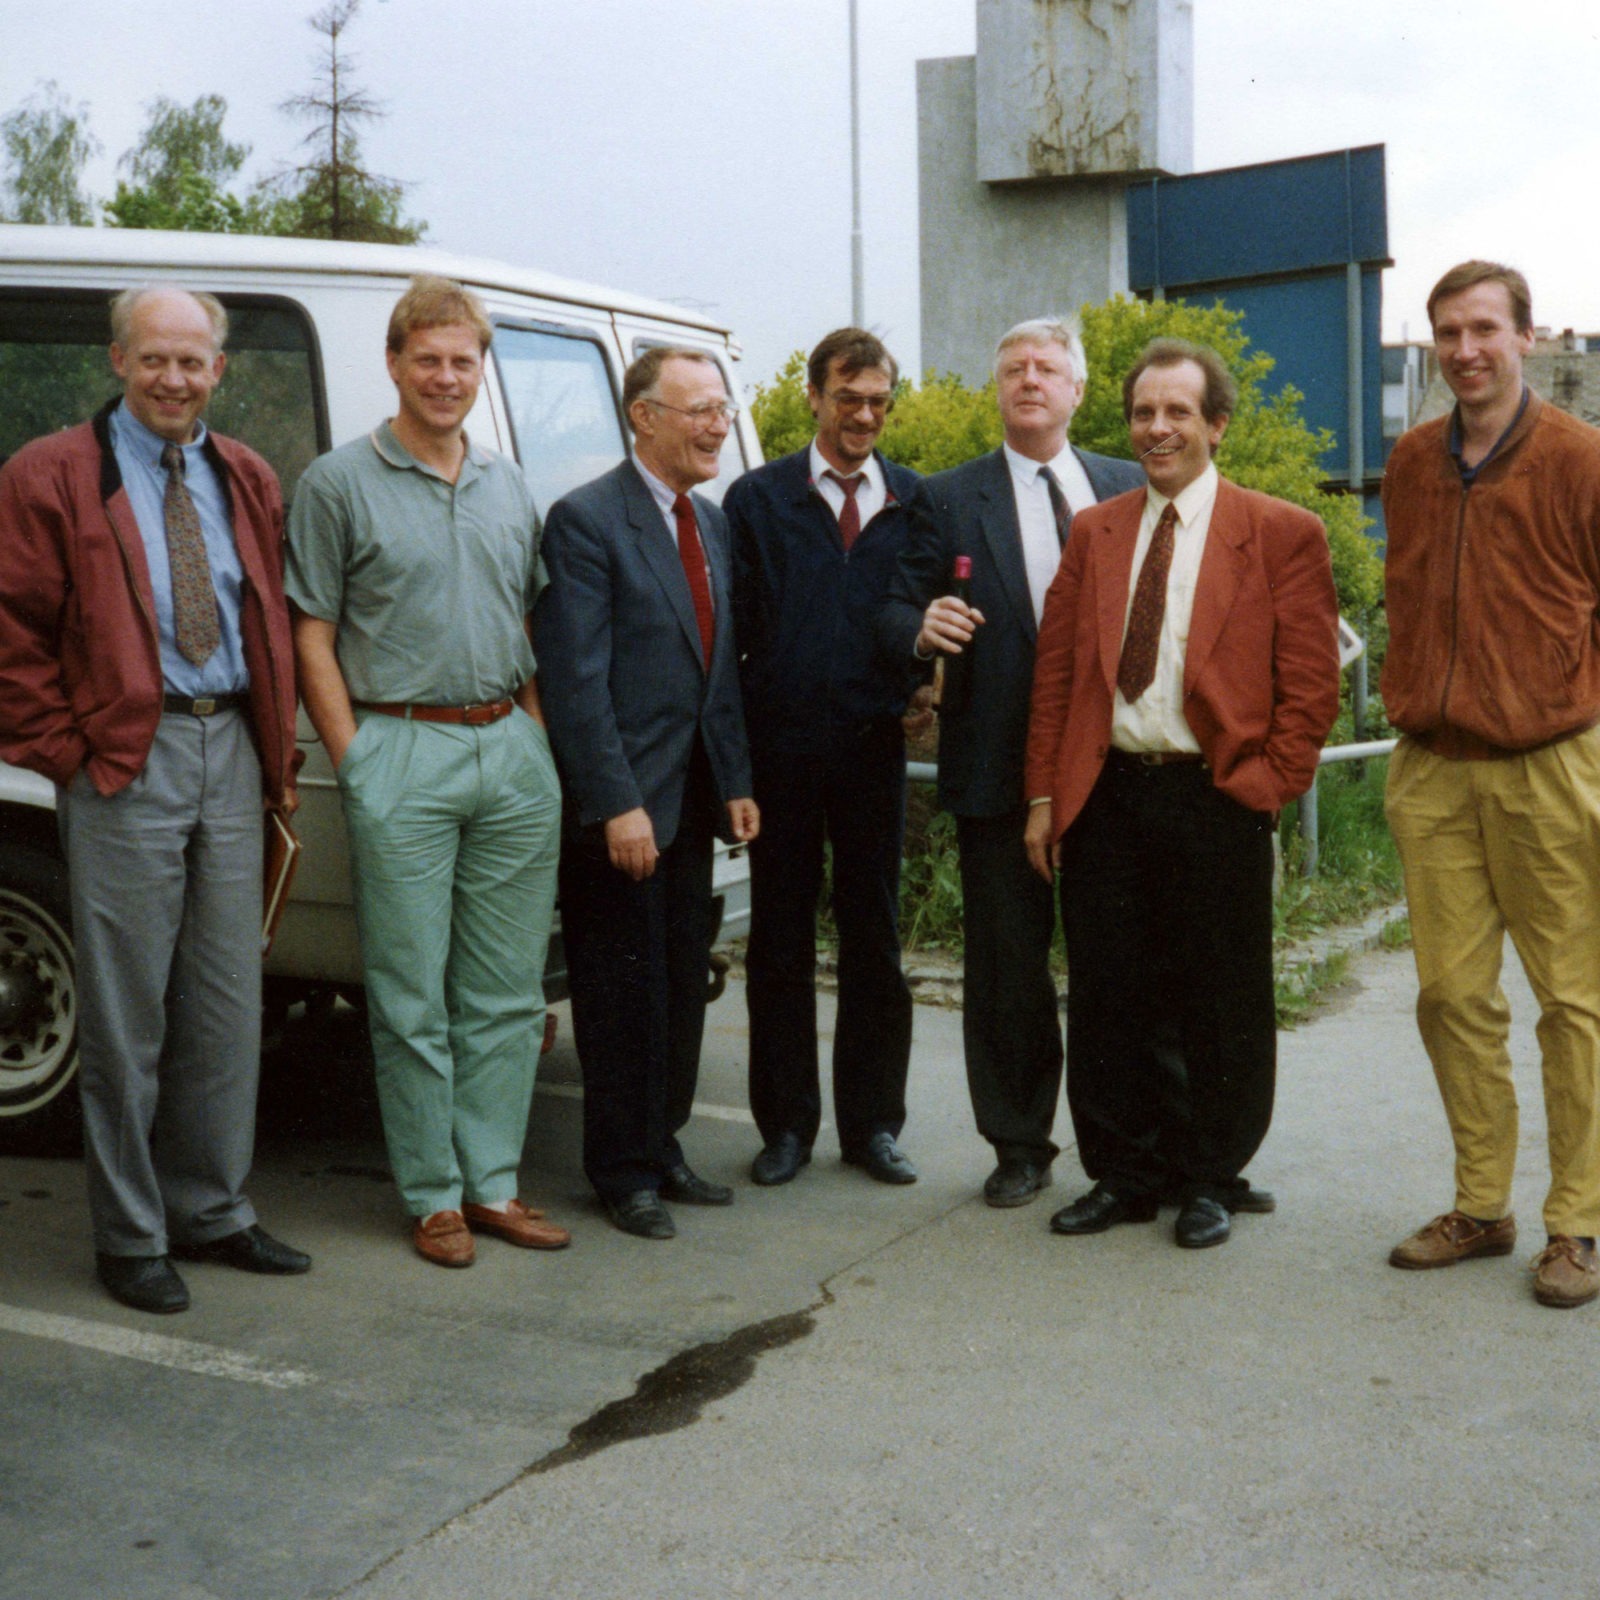 Sju män, uppklädda i 1980-talsstil, skrattar tillsammans på en parkeringsplats i ett fabriksområde.